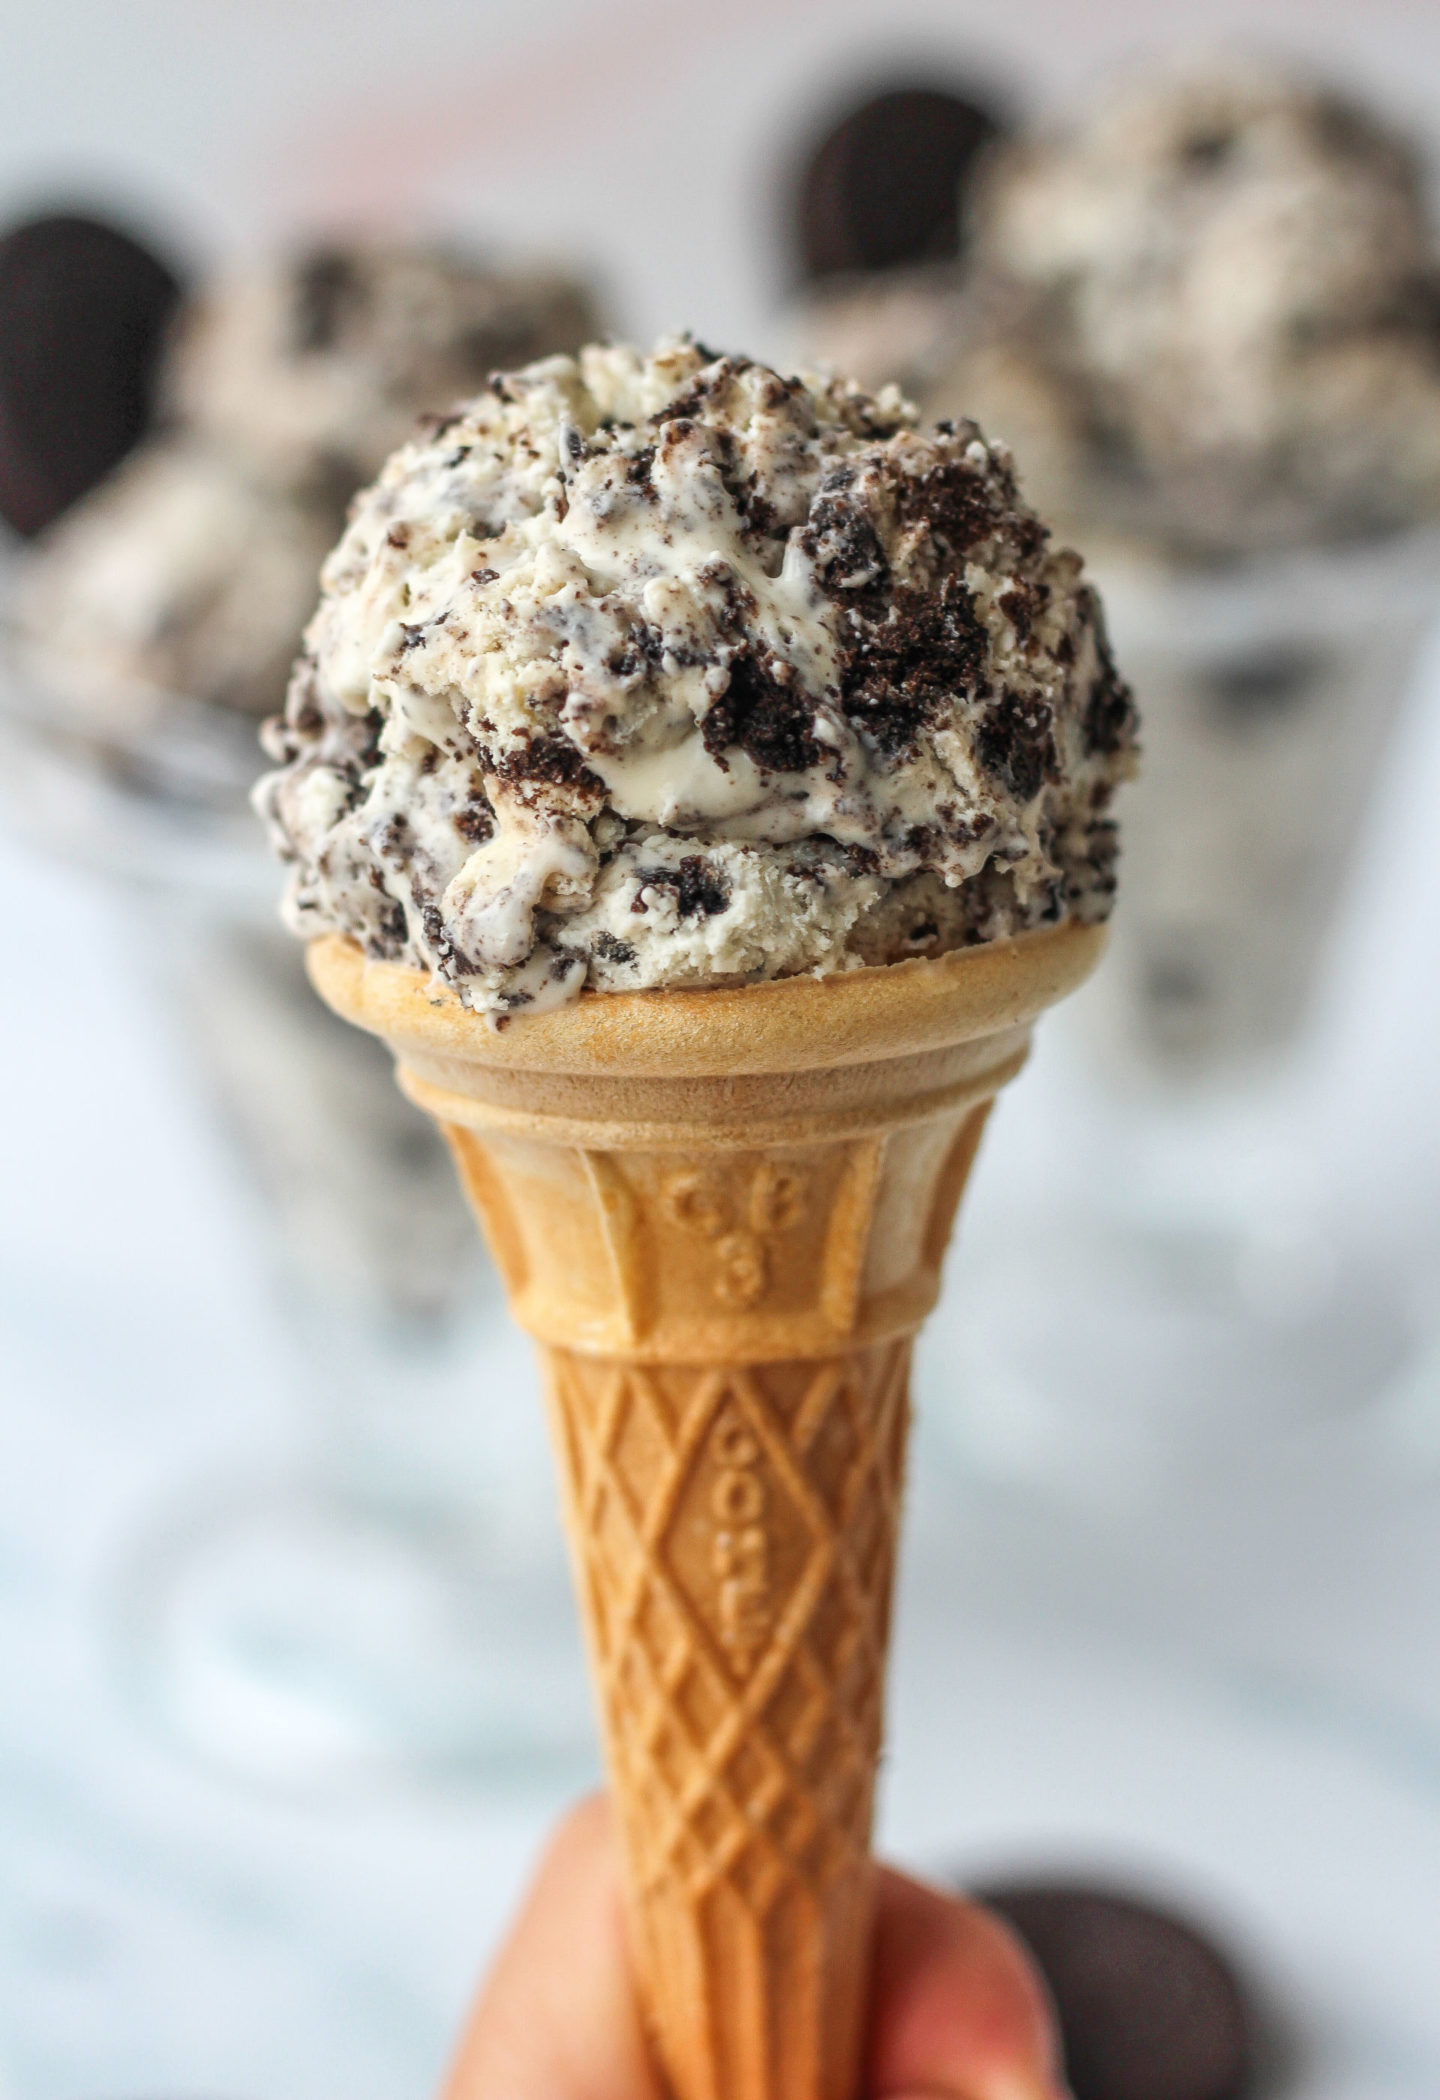 scoop of ice cream on cone